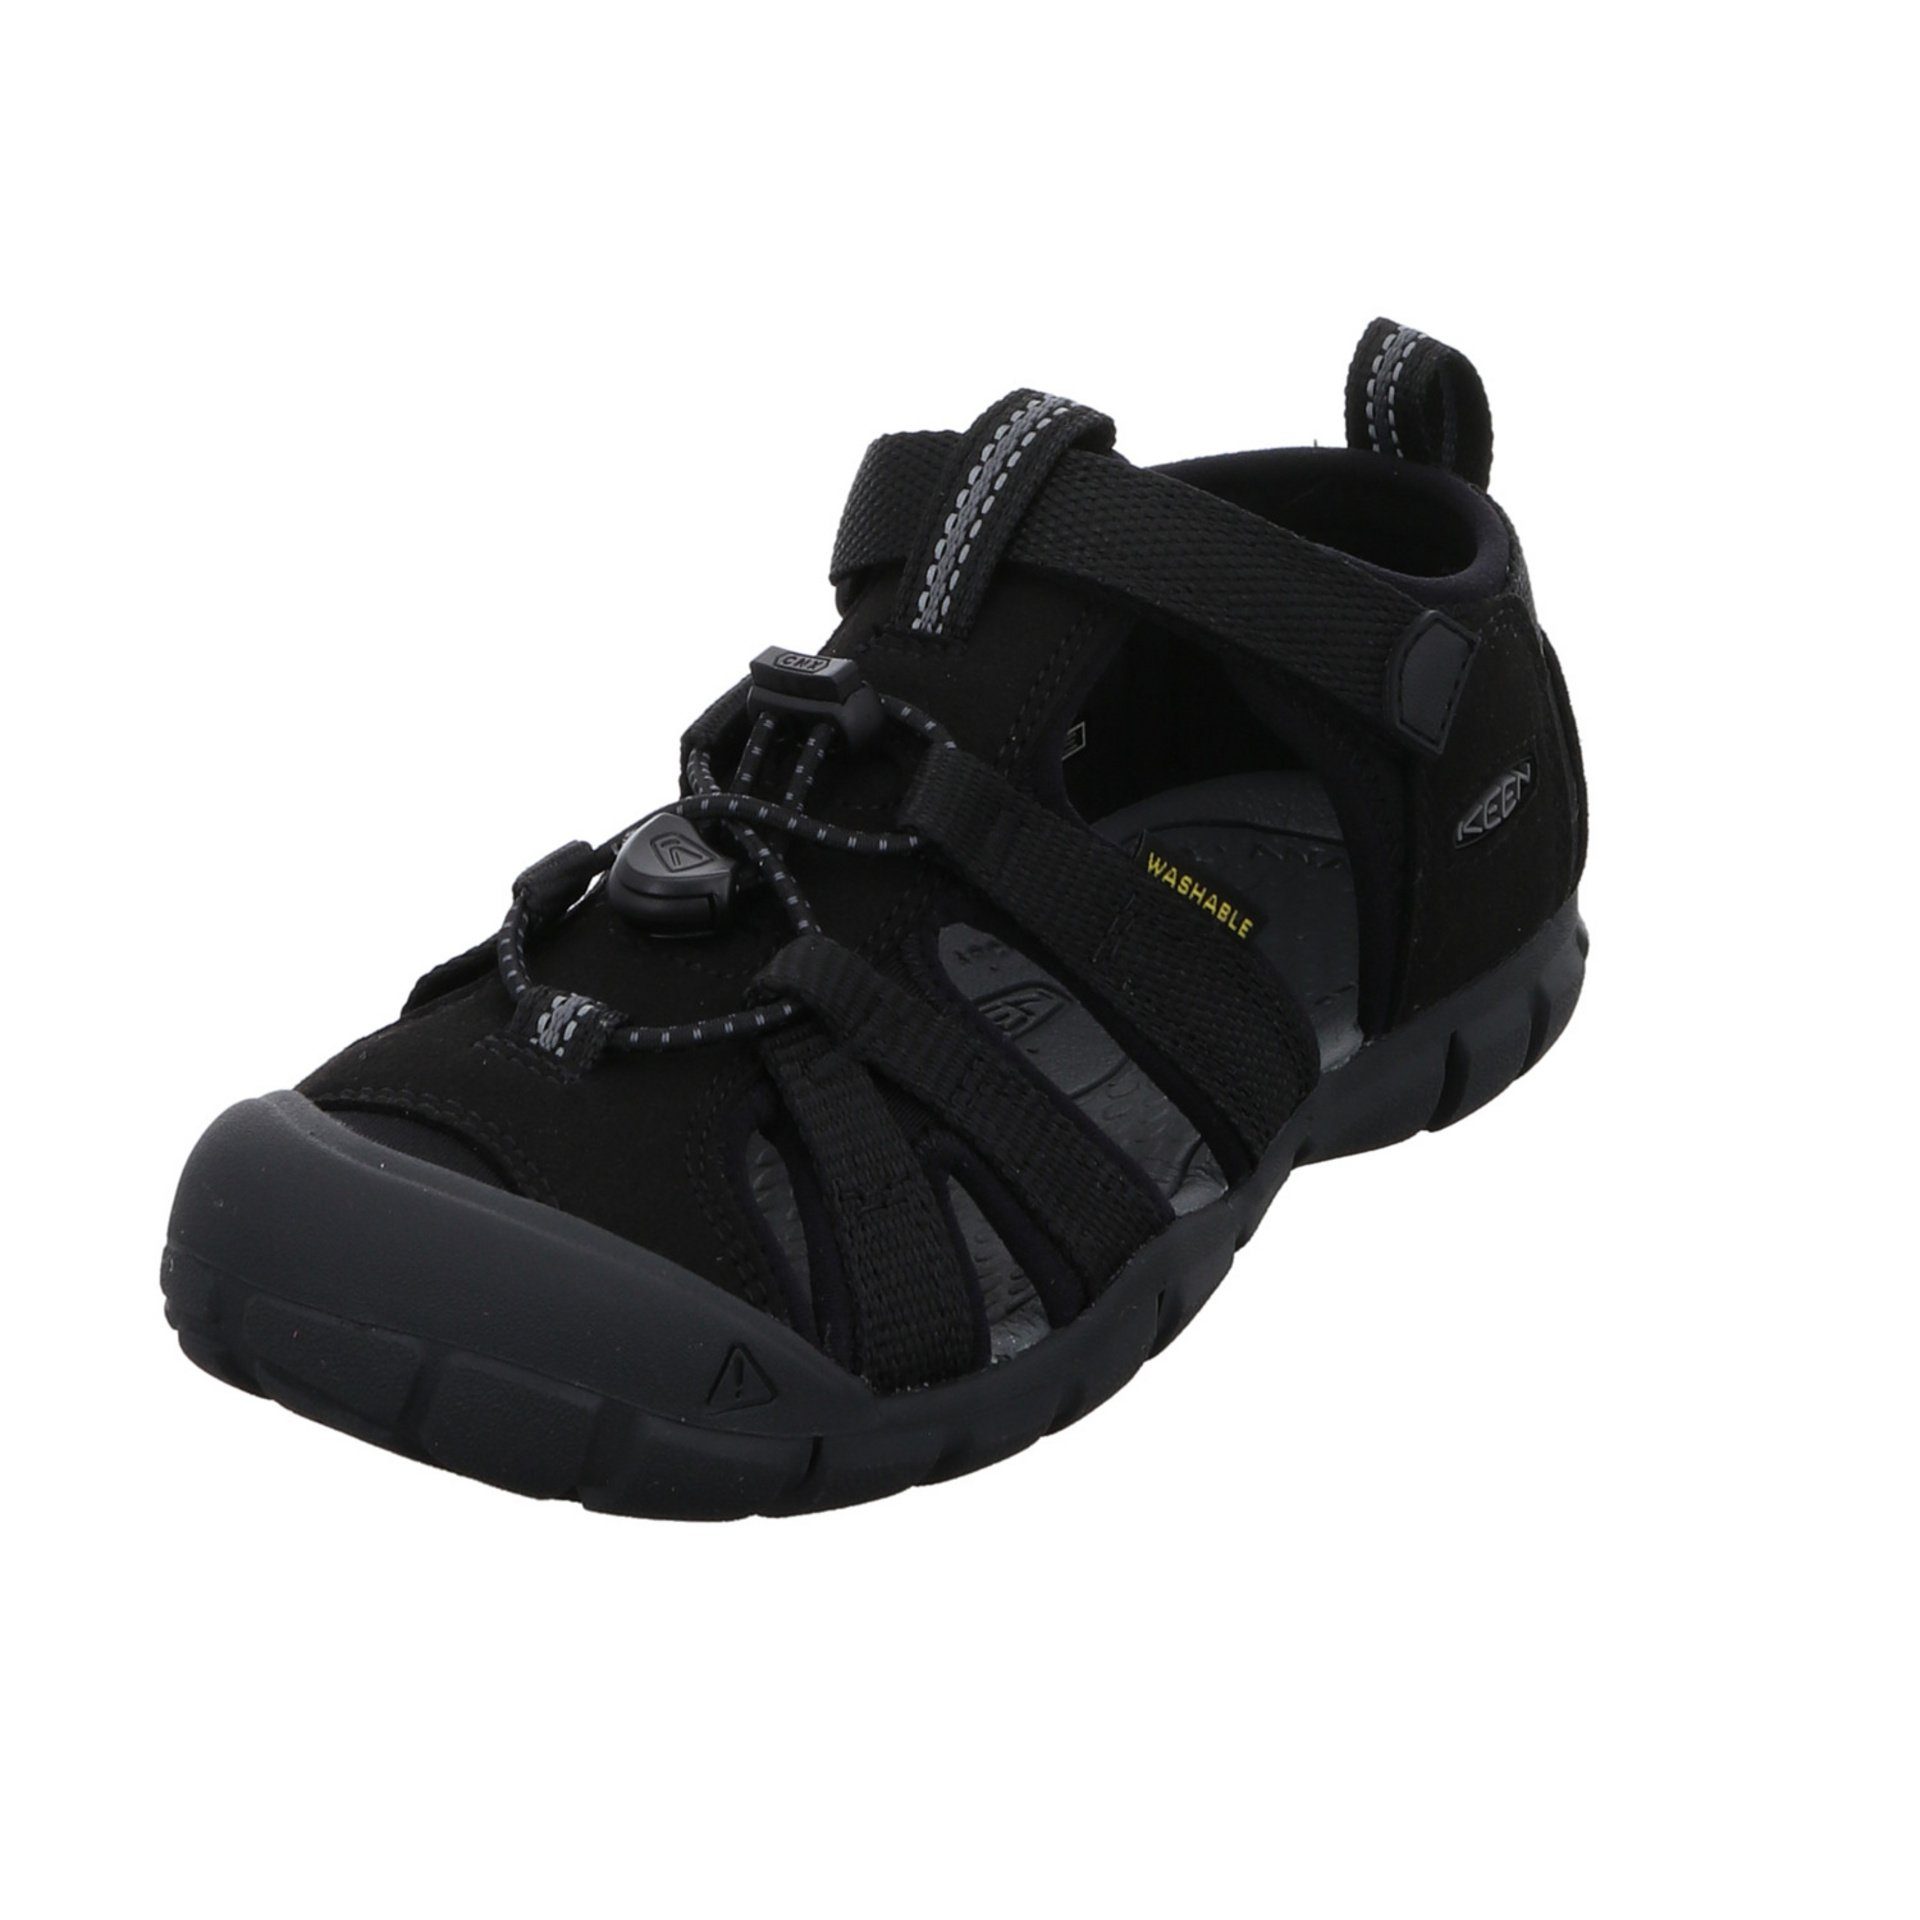 schwarz Jungen Sandale Sandalen Keen Schuhe dunkel Textil